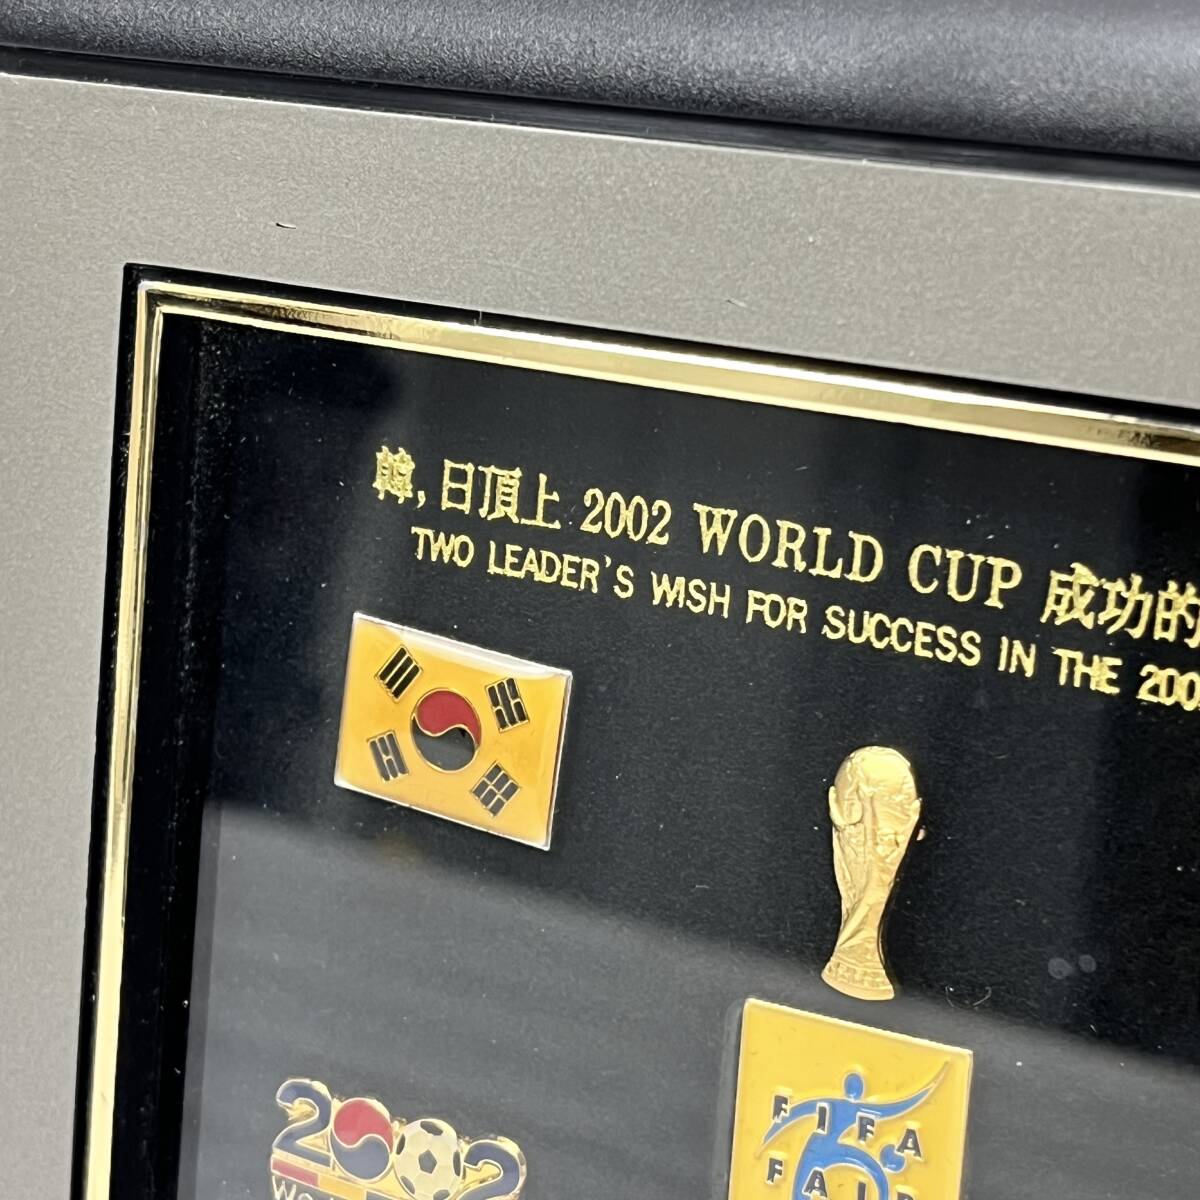 サッカー FIFA 日韓 ワールドカップ 記念 ピンバッジ ピンズ ケース入り 韓,日頂上 2002 WORLD CUP 成功的共同開催宣言 飾物_画像2